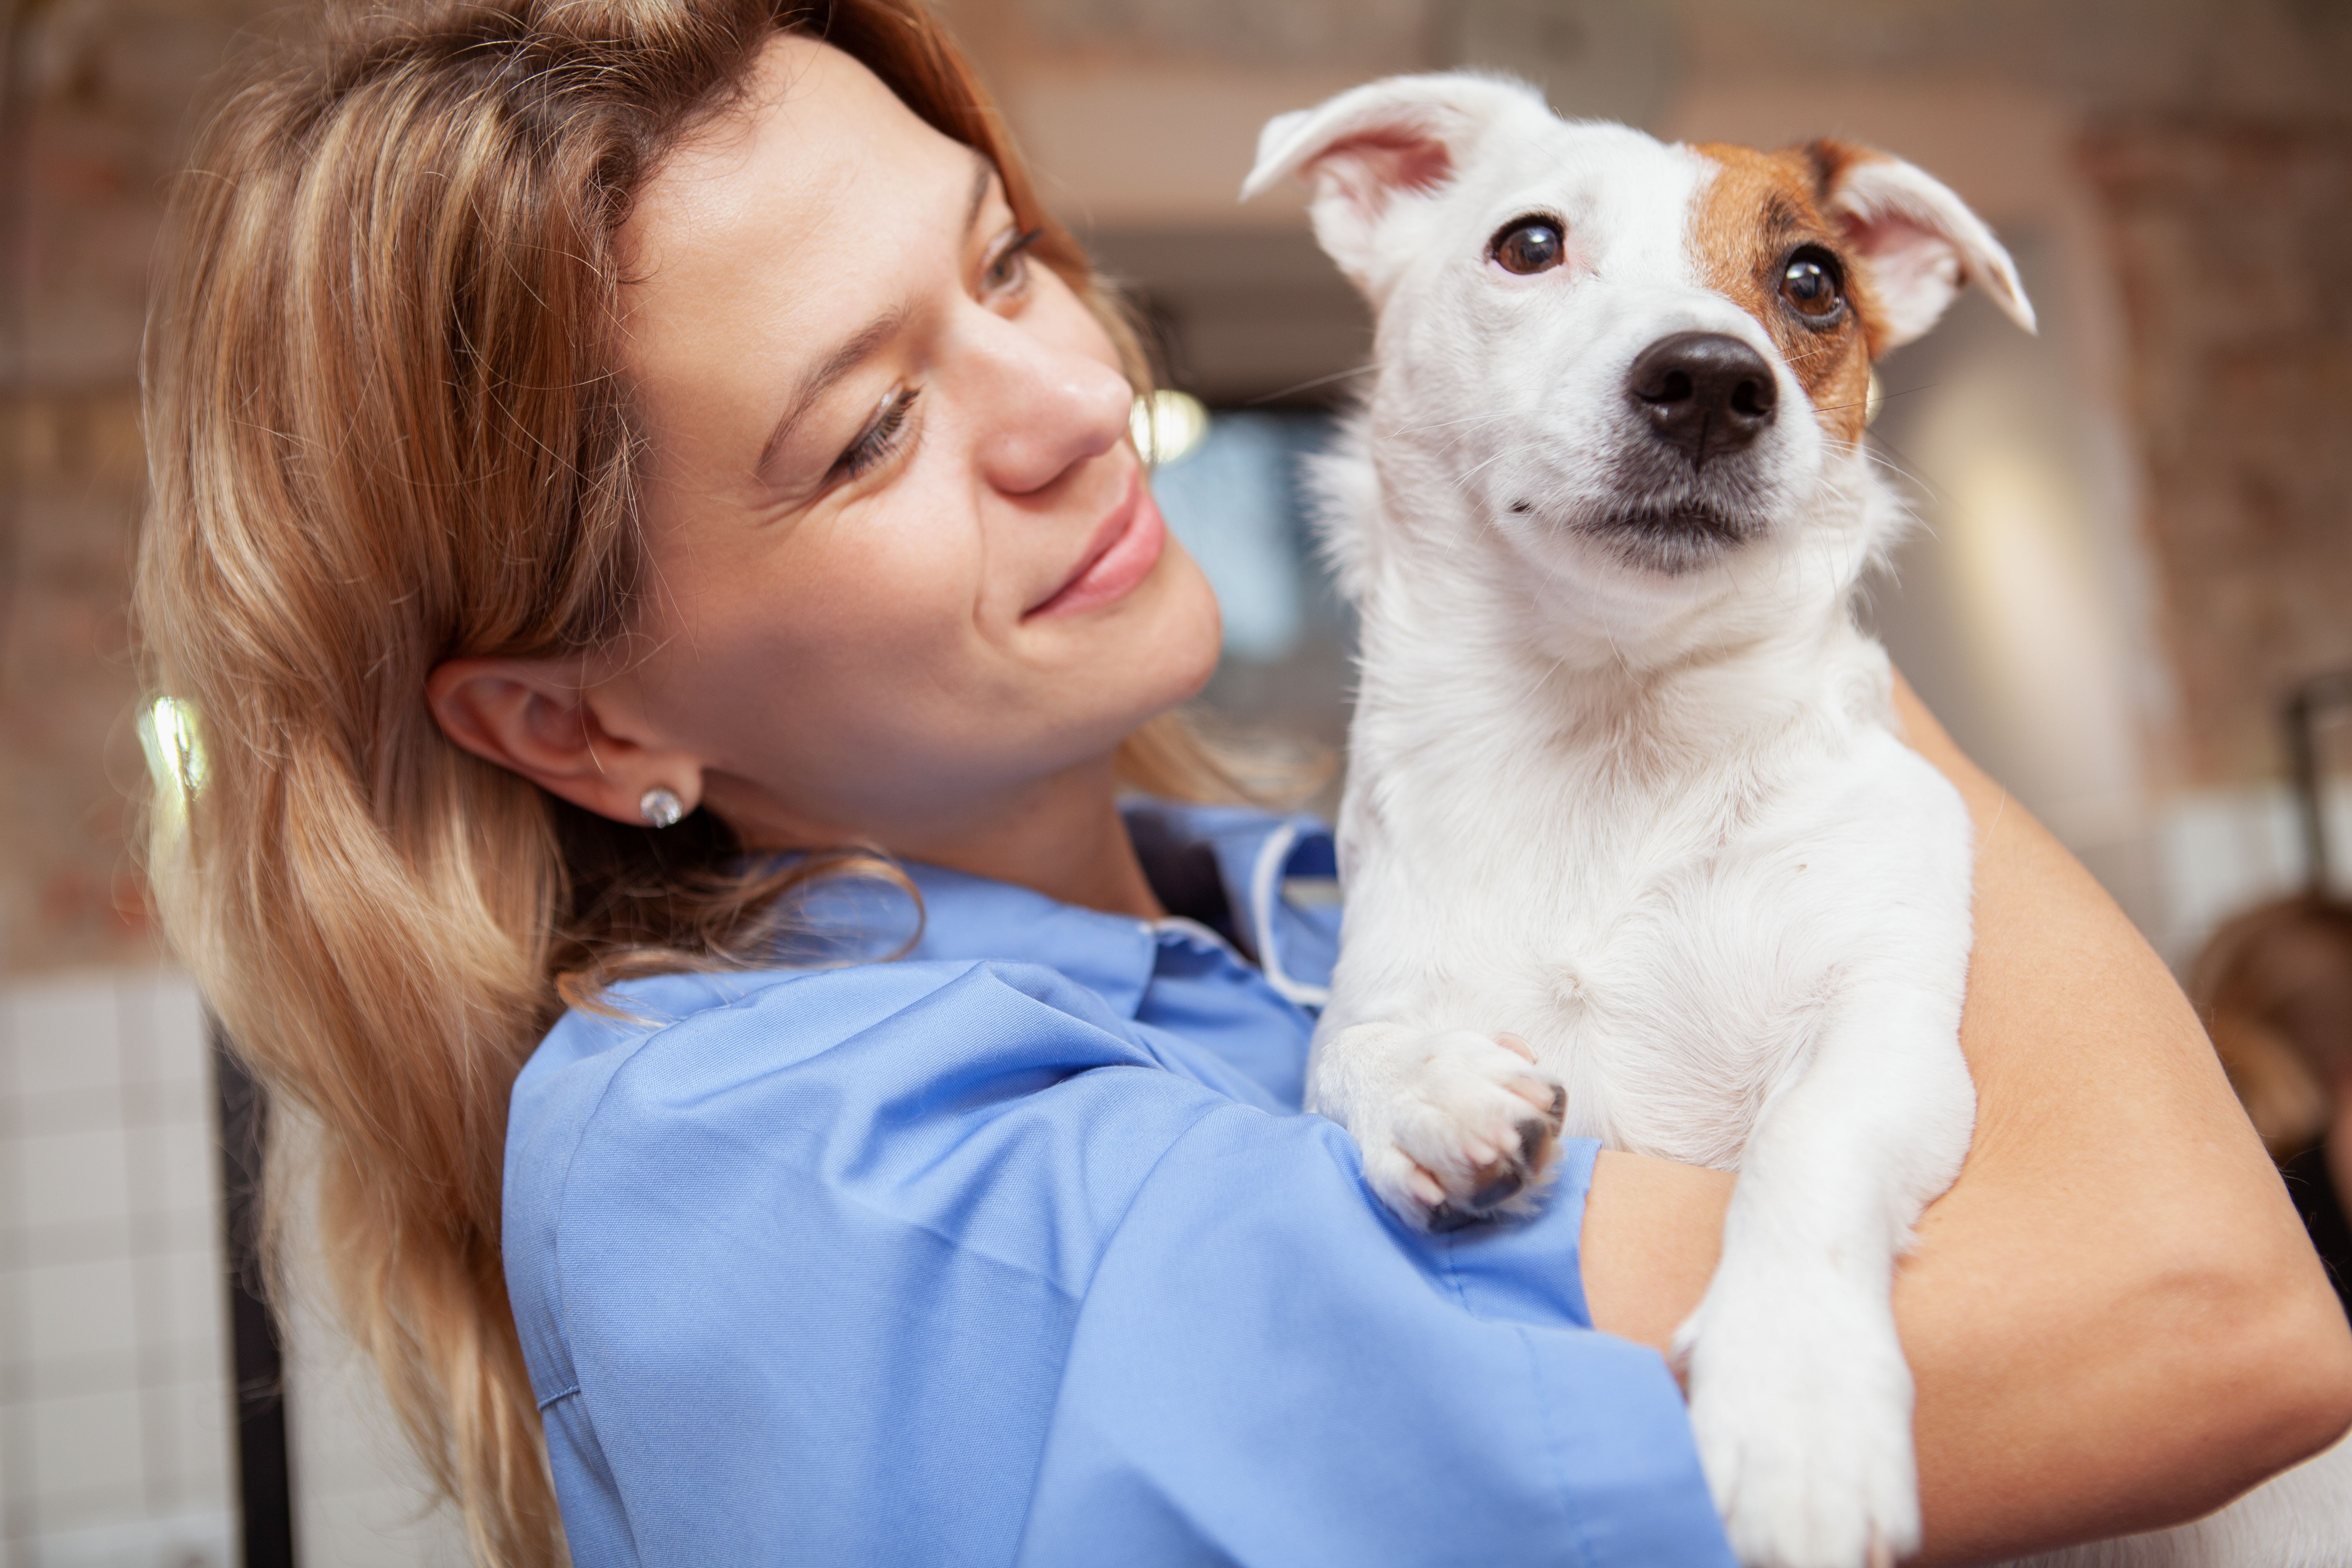 Ветеринар экзамены. Ветеринар женщина. Медицинская собака. Женщина ветеринар фото. Счастливая собака в руках ветеринара женщины фото.